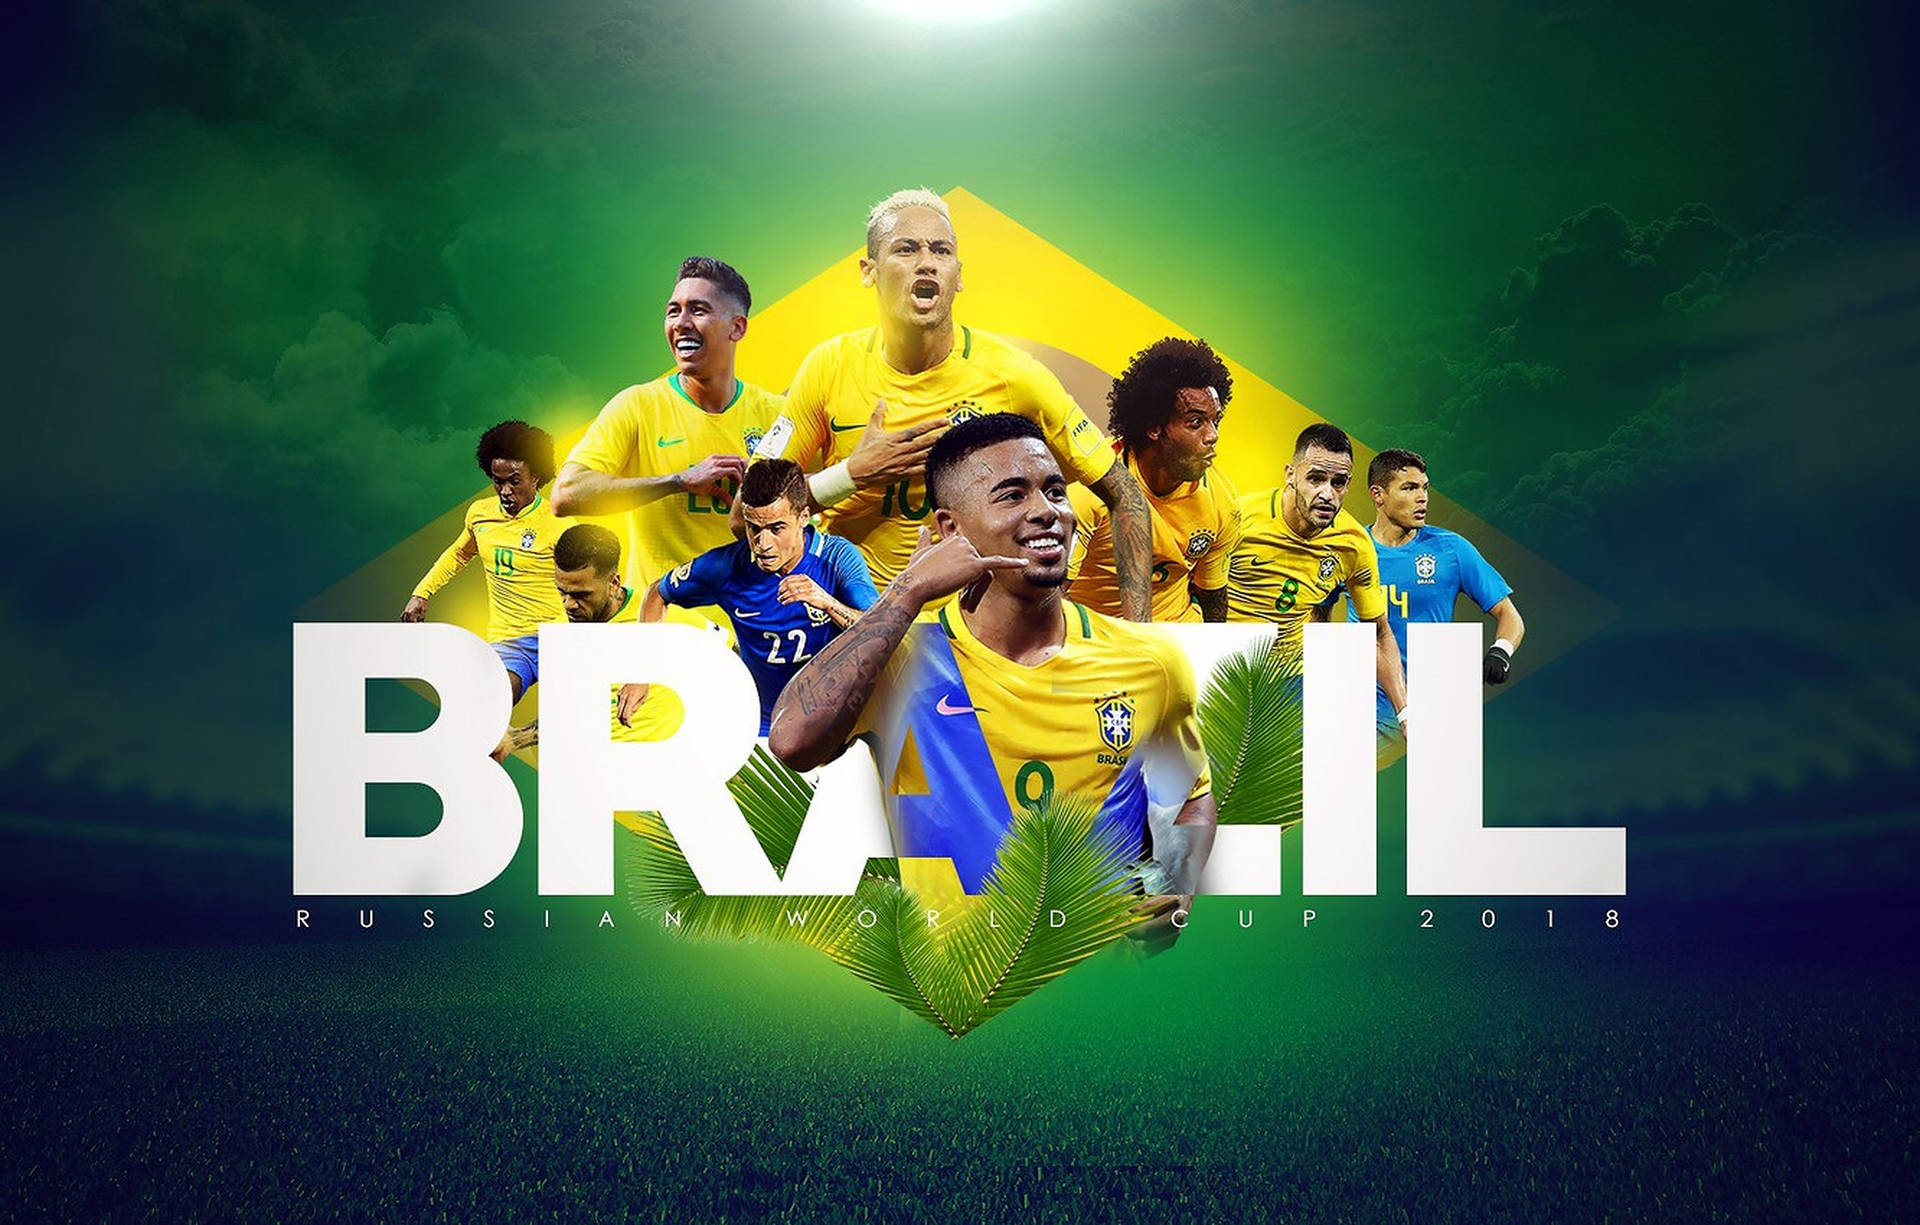 Brazil National Football Team Russian World Cup 2018 Wallpaper